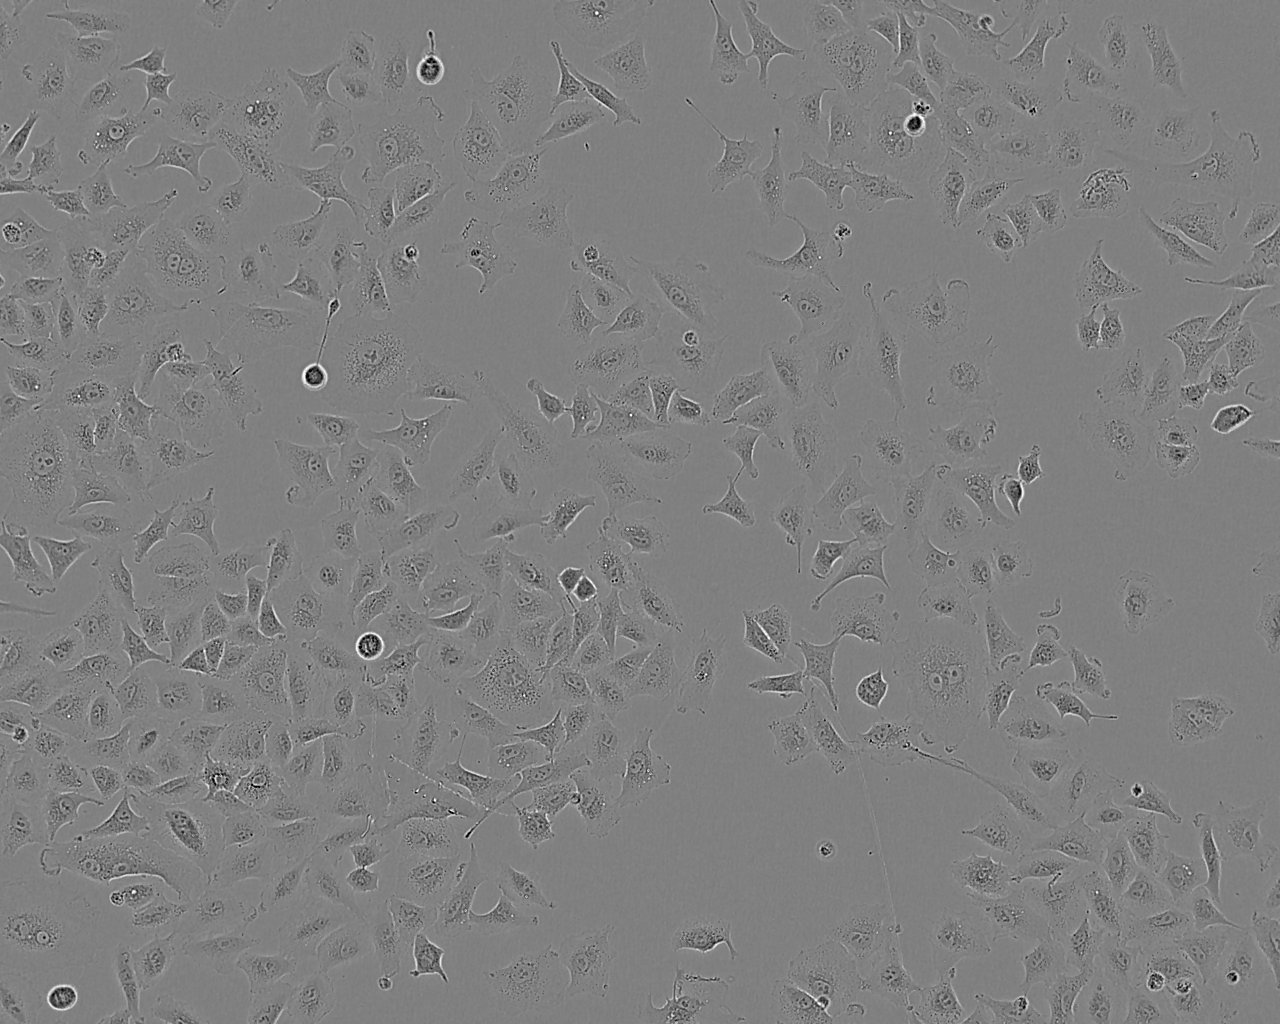 HCC70 epithelioid cells人乳腺导管癌细胞系,HCC70 epithelioid cells